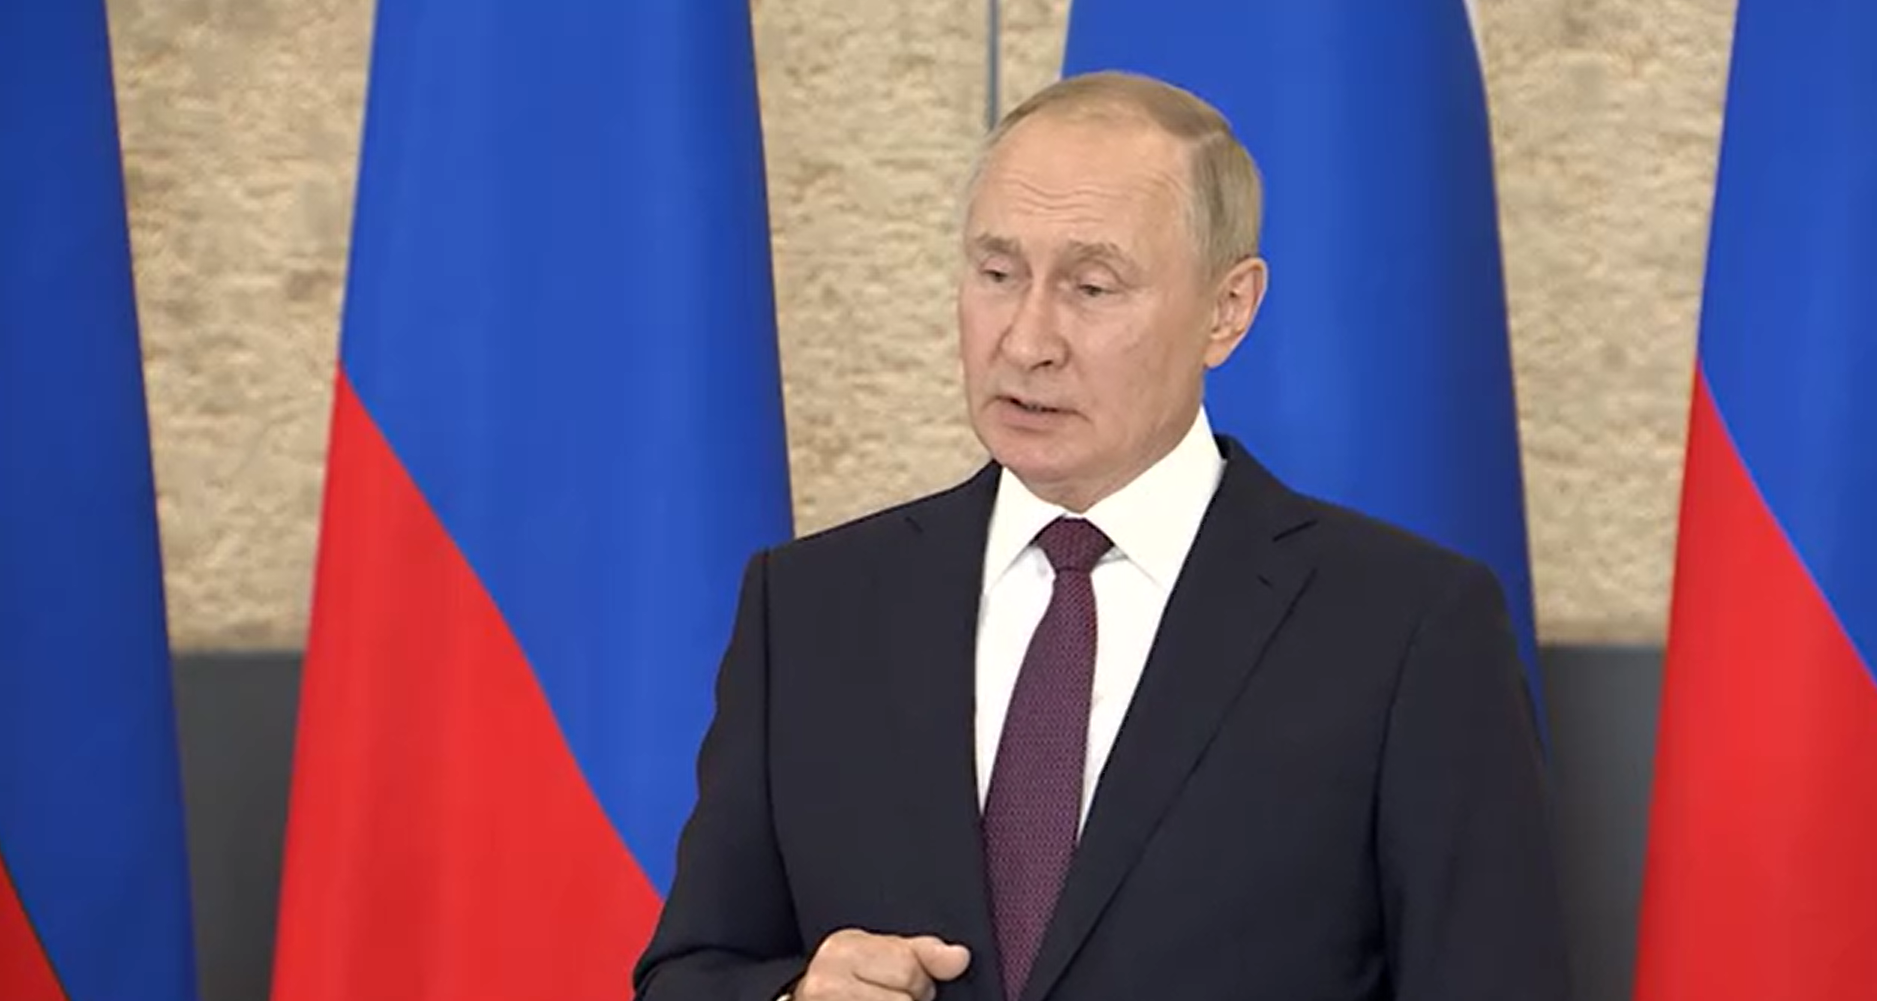 Владимир Путин: На Украине происходят трагические события, конфликты есть и между странами СНГ